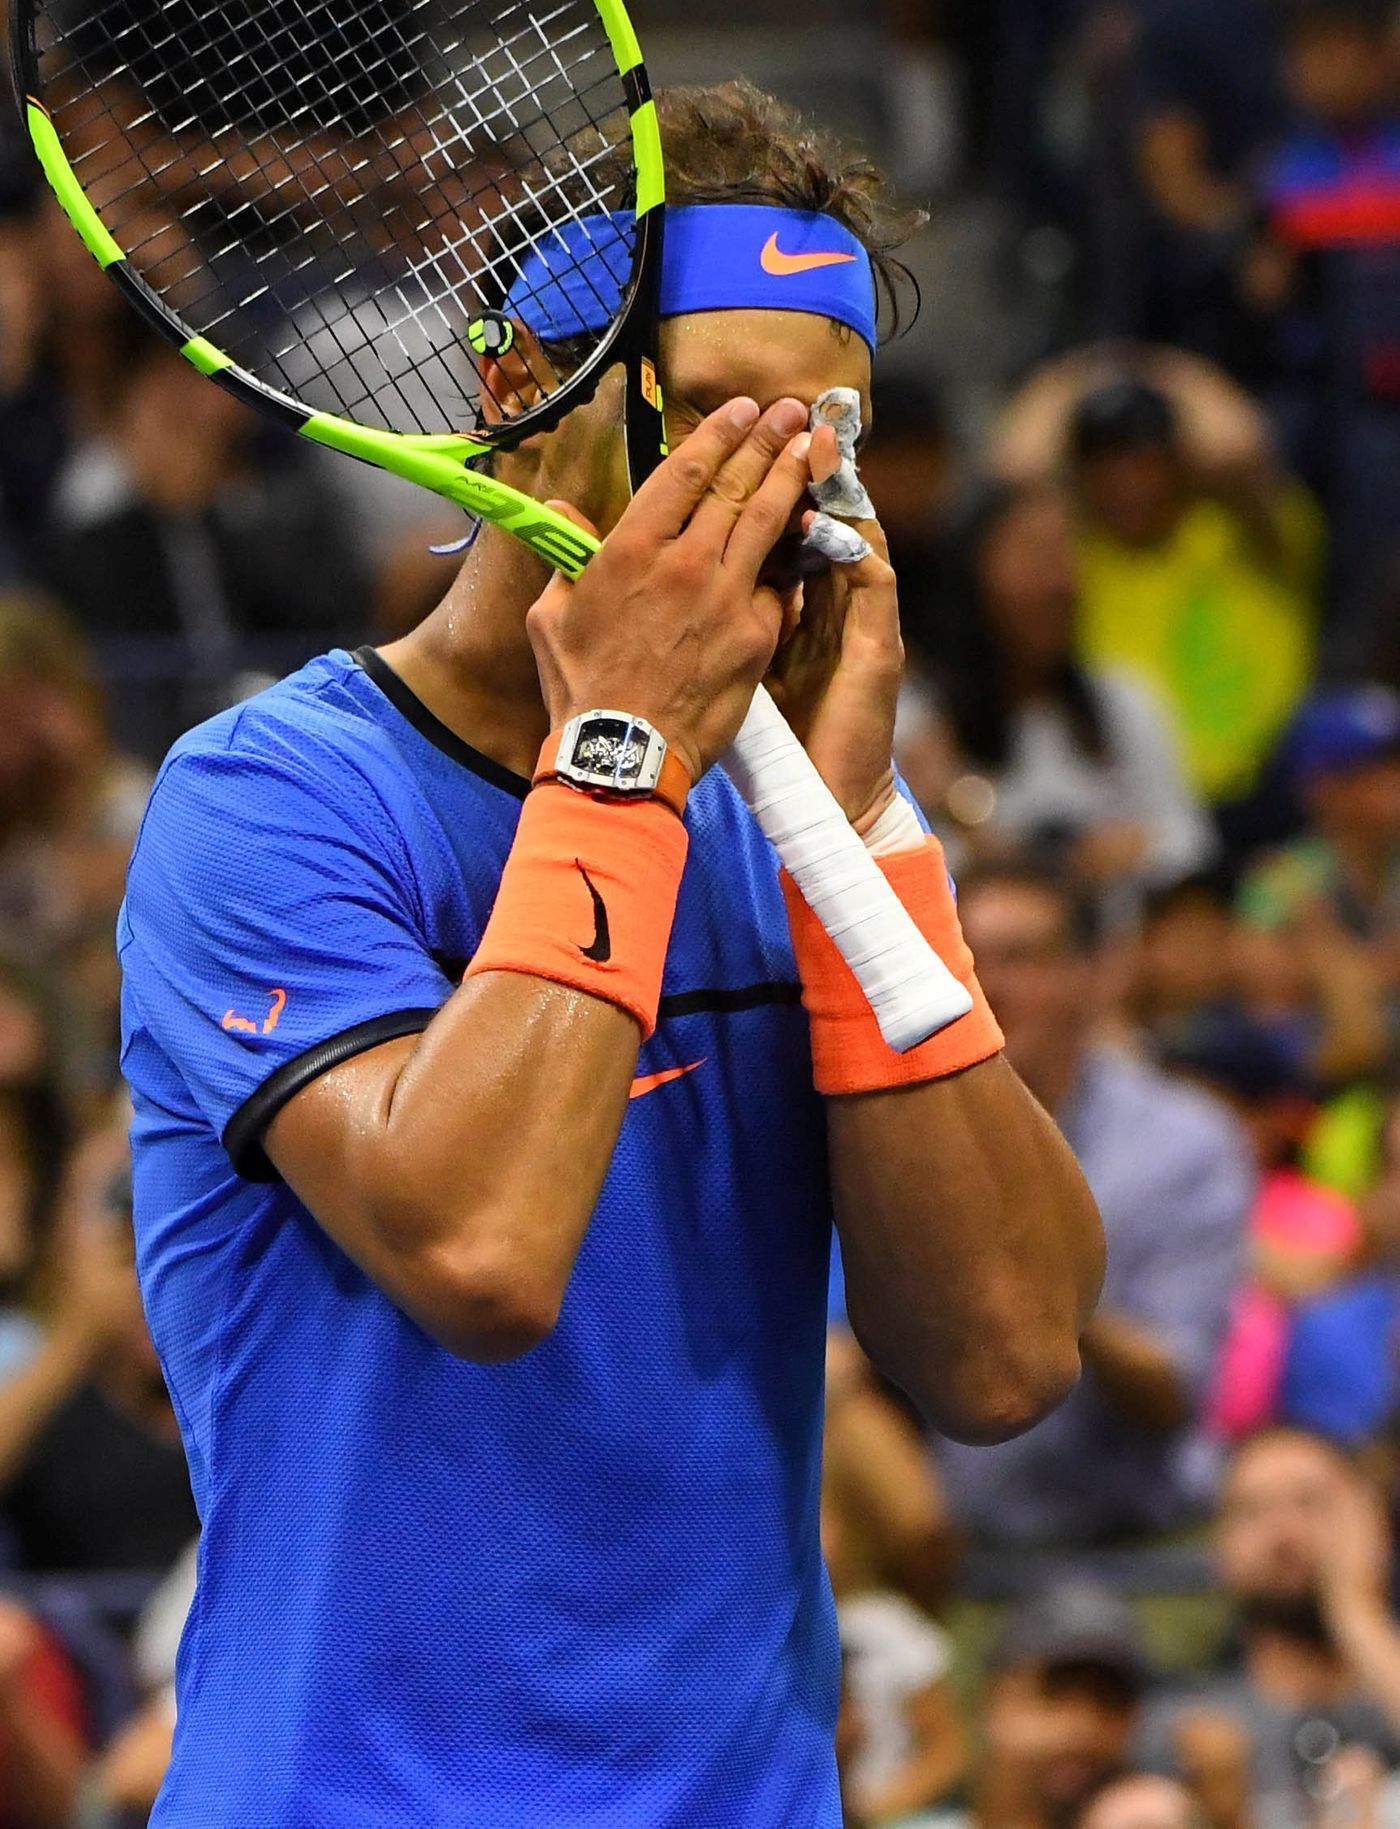 Rafael nadal v osmifinále US Open 2016